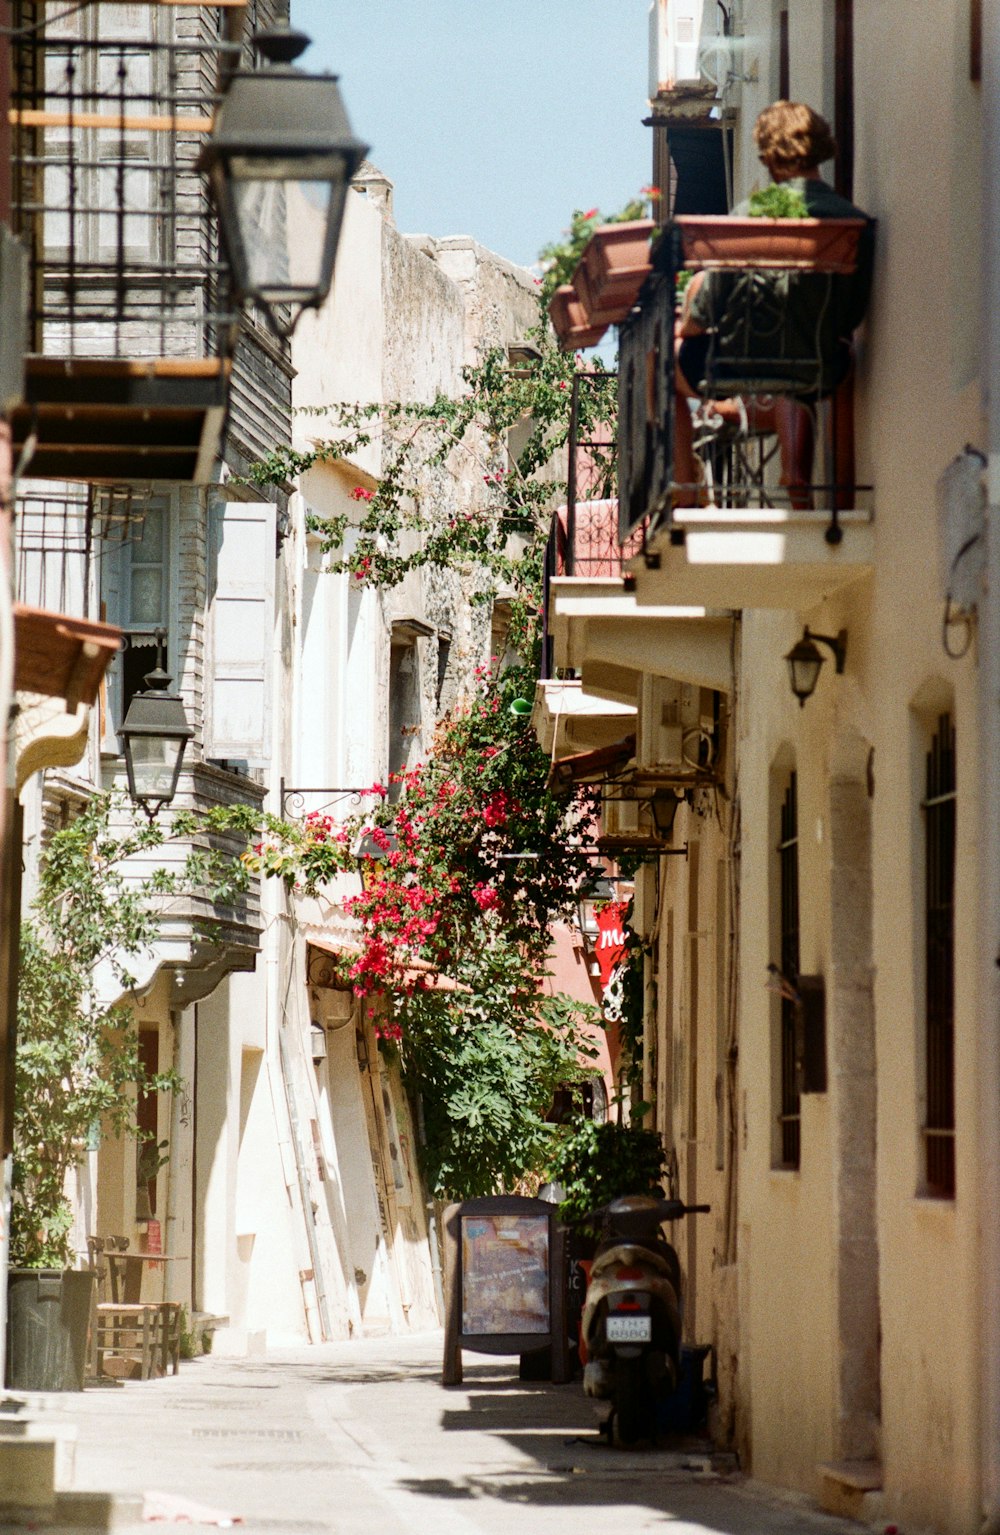 Una calle estrecha de la ciudad con flores en los balcones